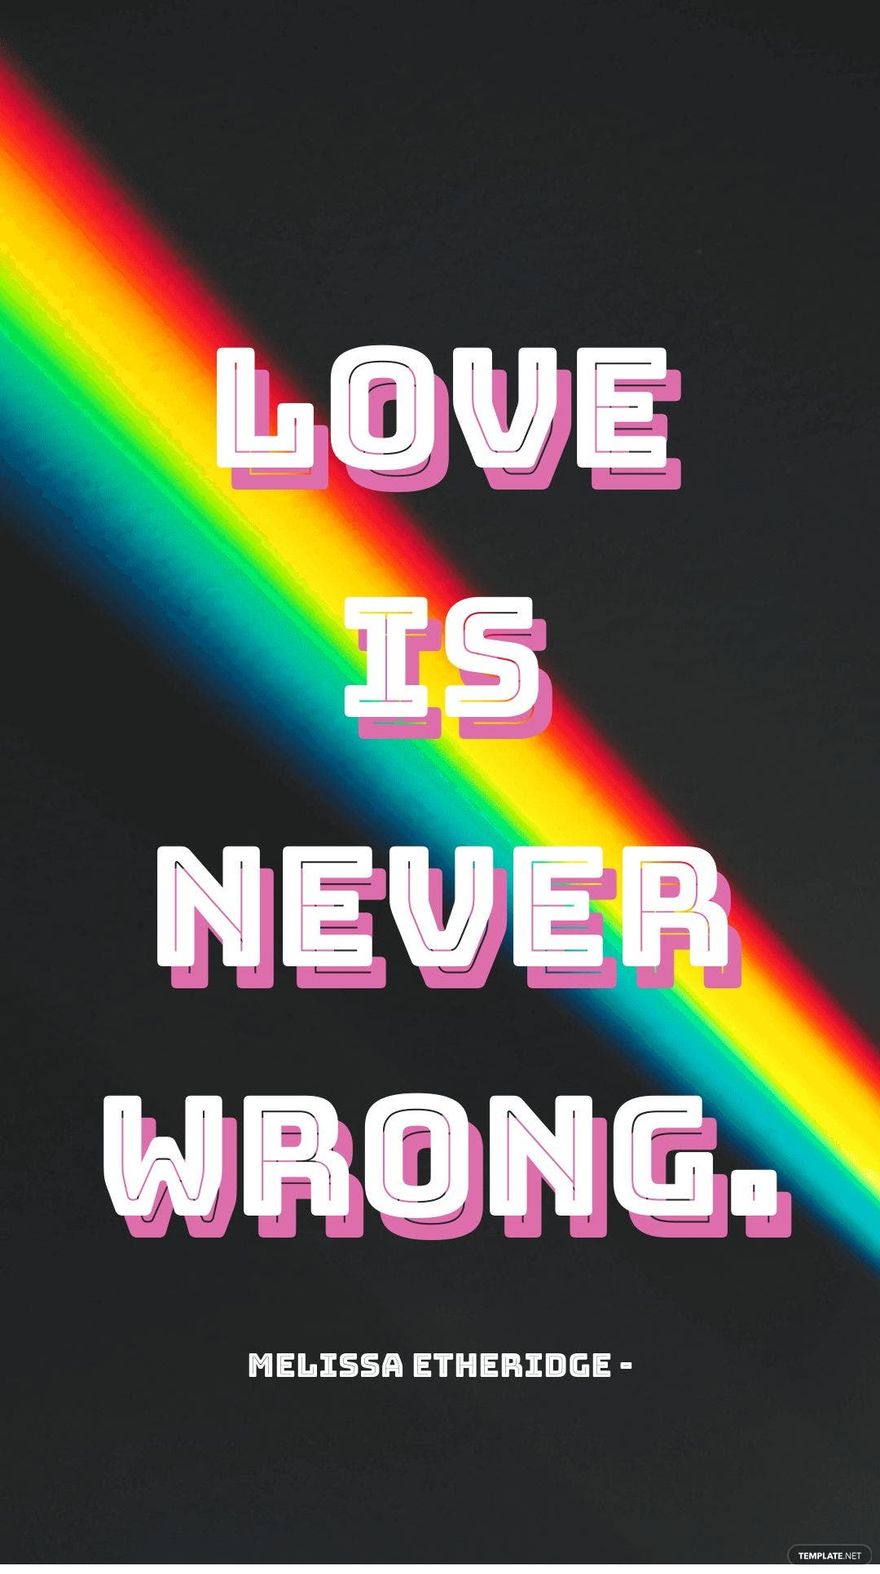 Free Melissa Etheridge - Love is never wrong.